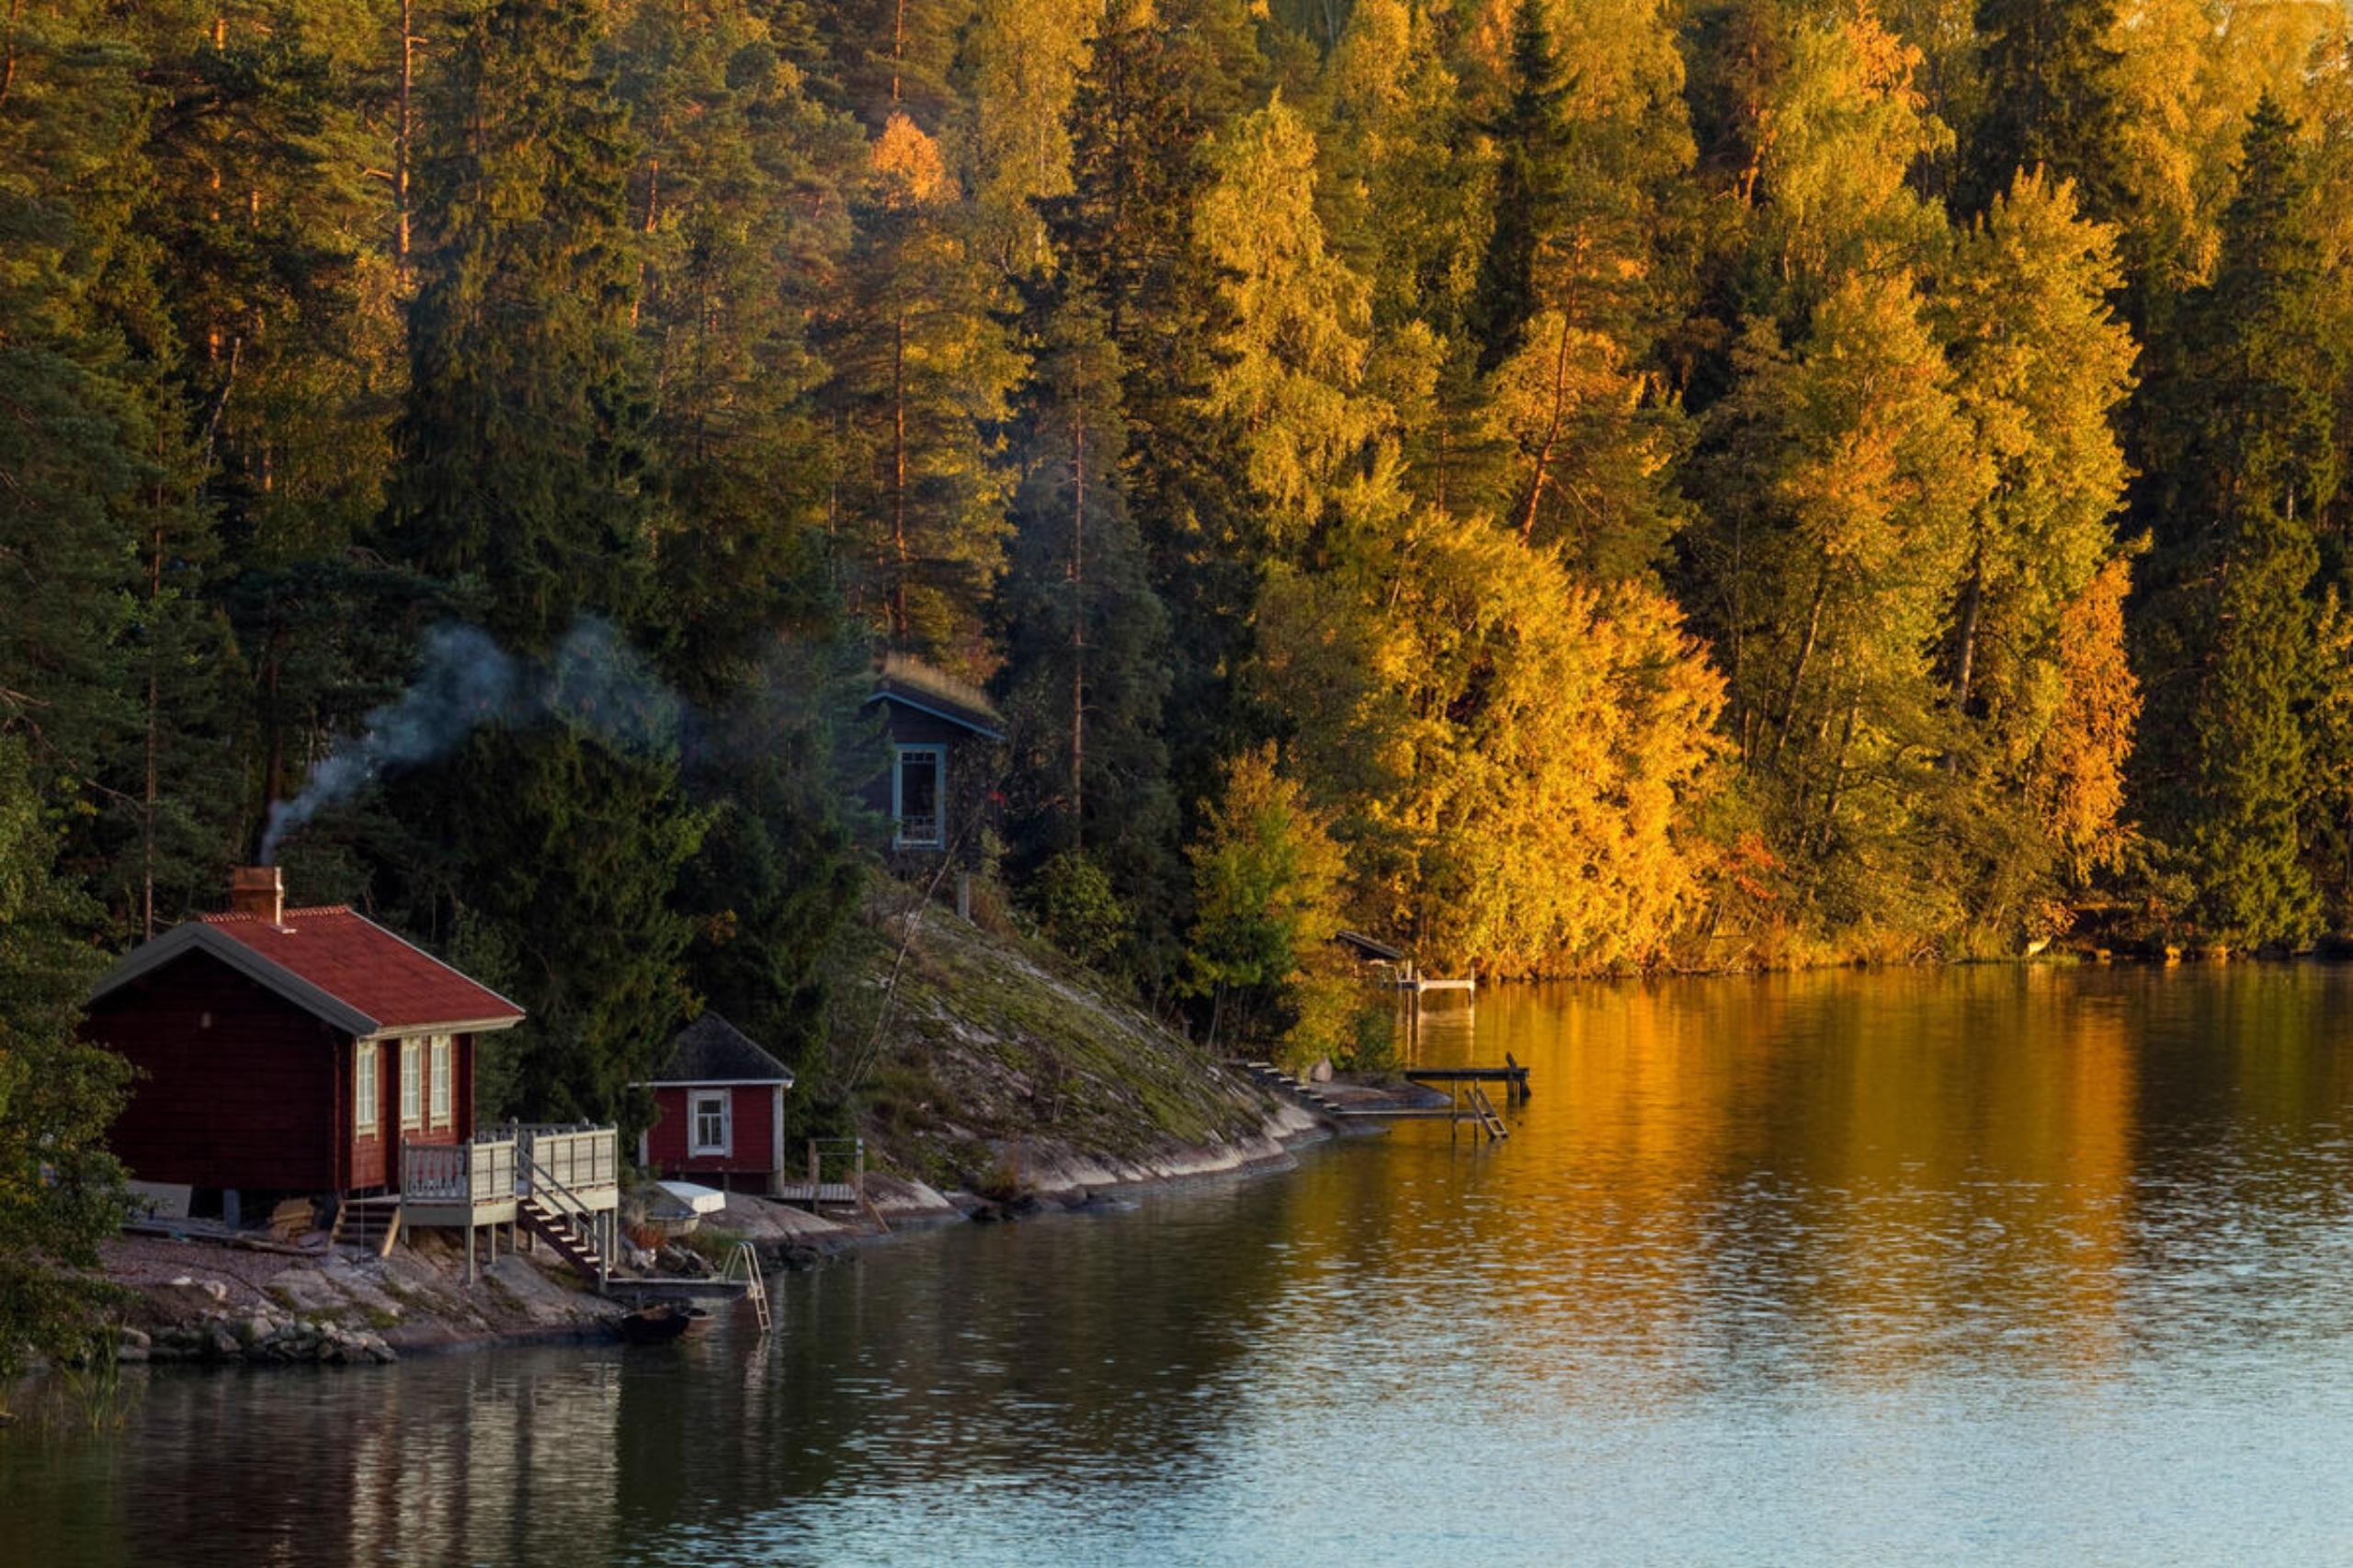 Verbringe auf deiner Finnland-Reise unbedingt ein bisschen Zeit mit der traditionellen Sauna-Kultur. 